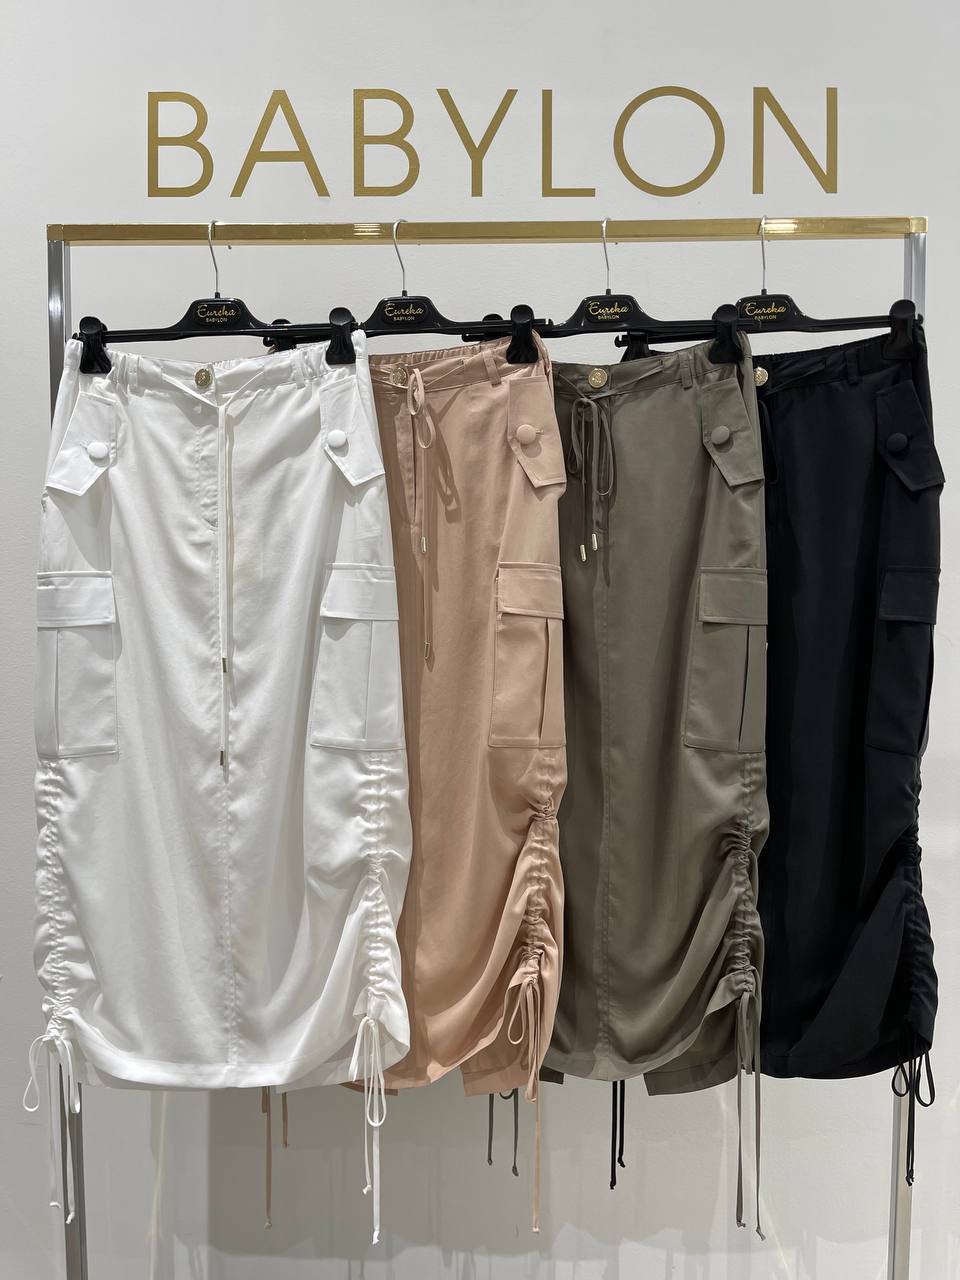 Итальянская одежда, бренд Babylon, арт. 73262201